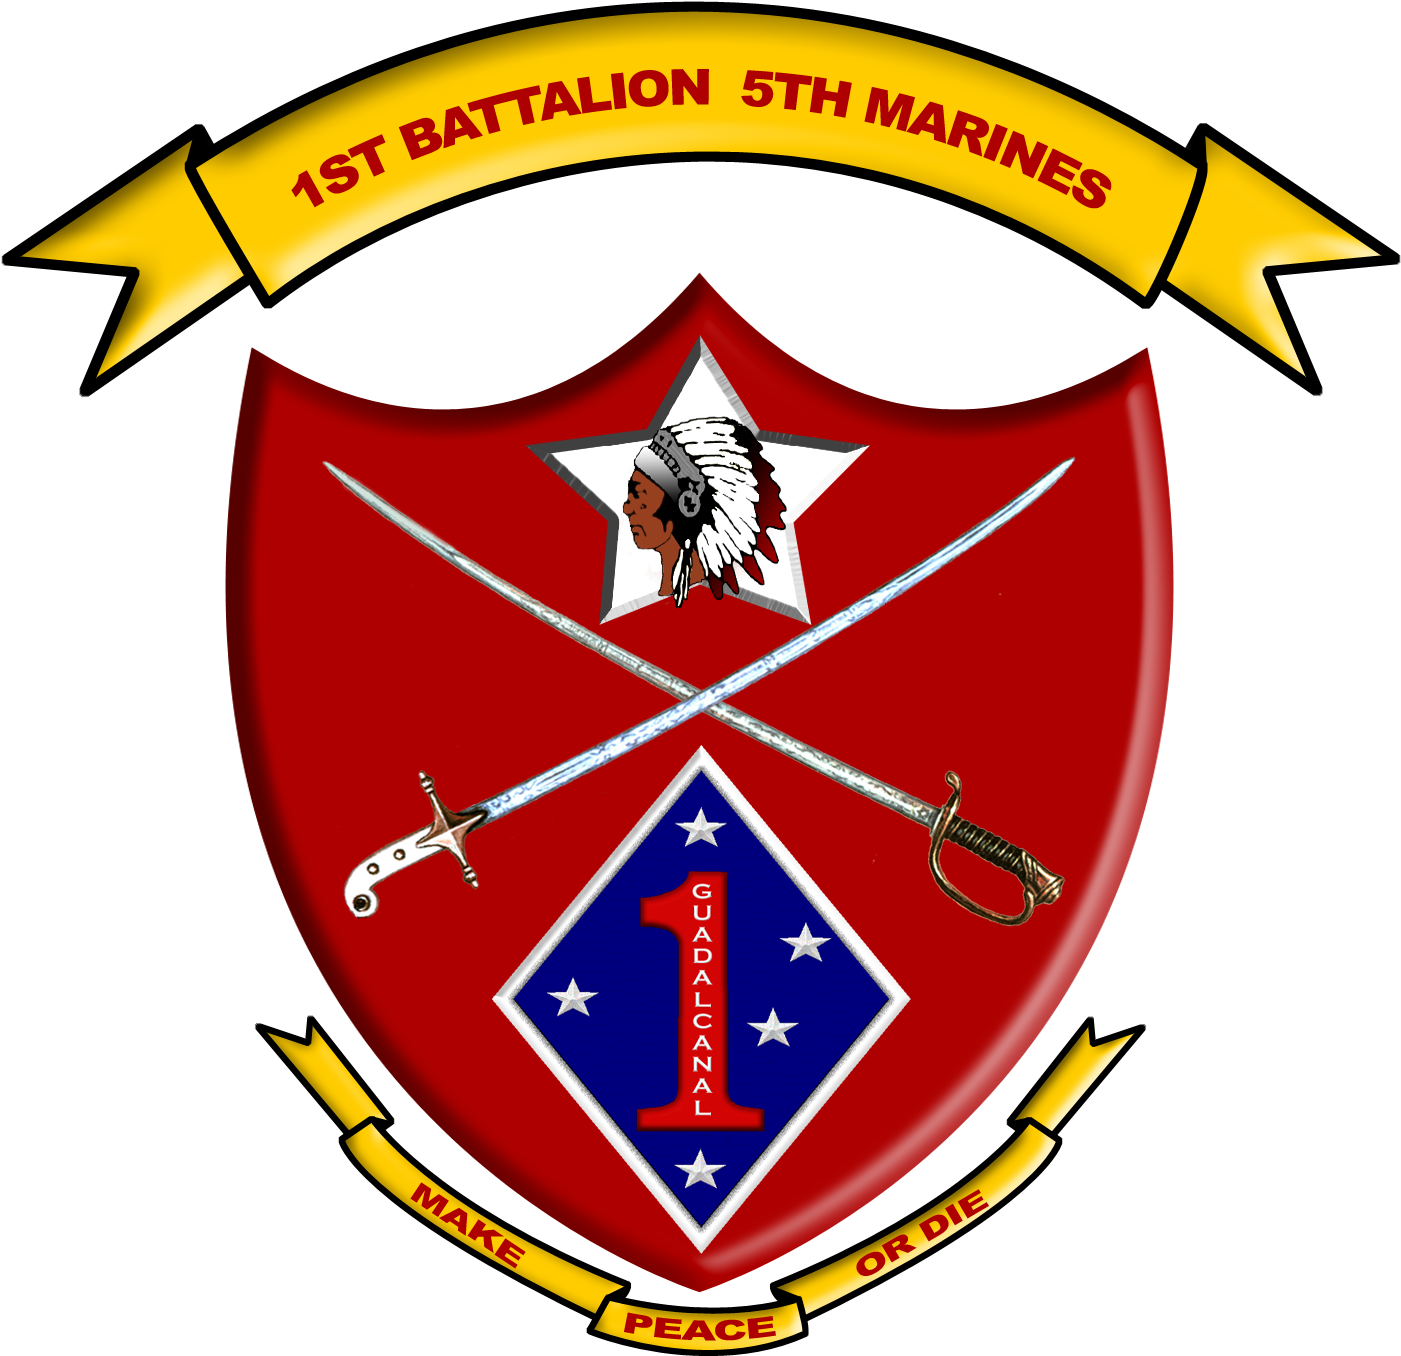 1st Battalion 5th Marines - 1st Bn 5th Marines (1452x1420)